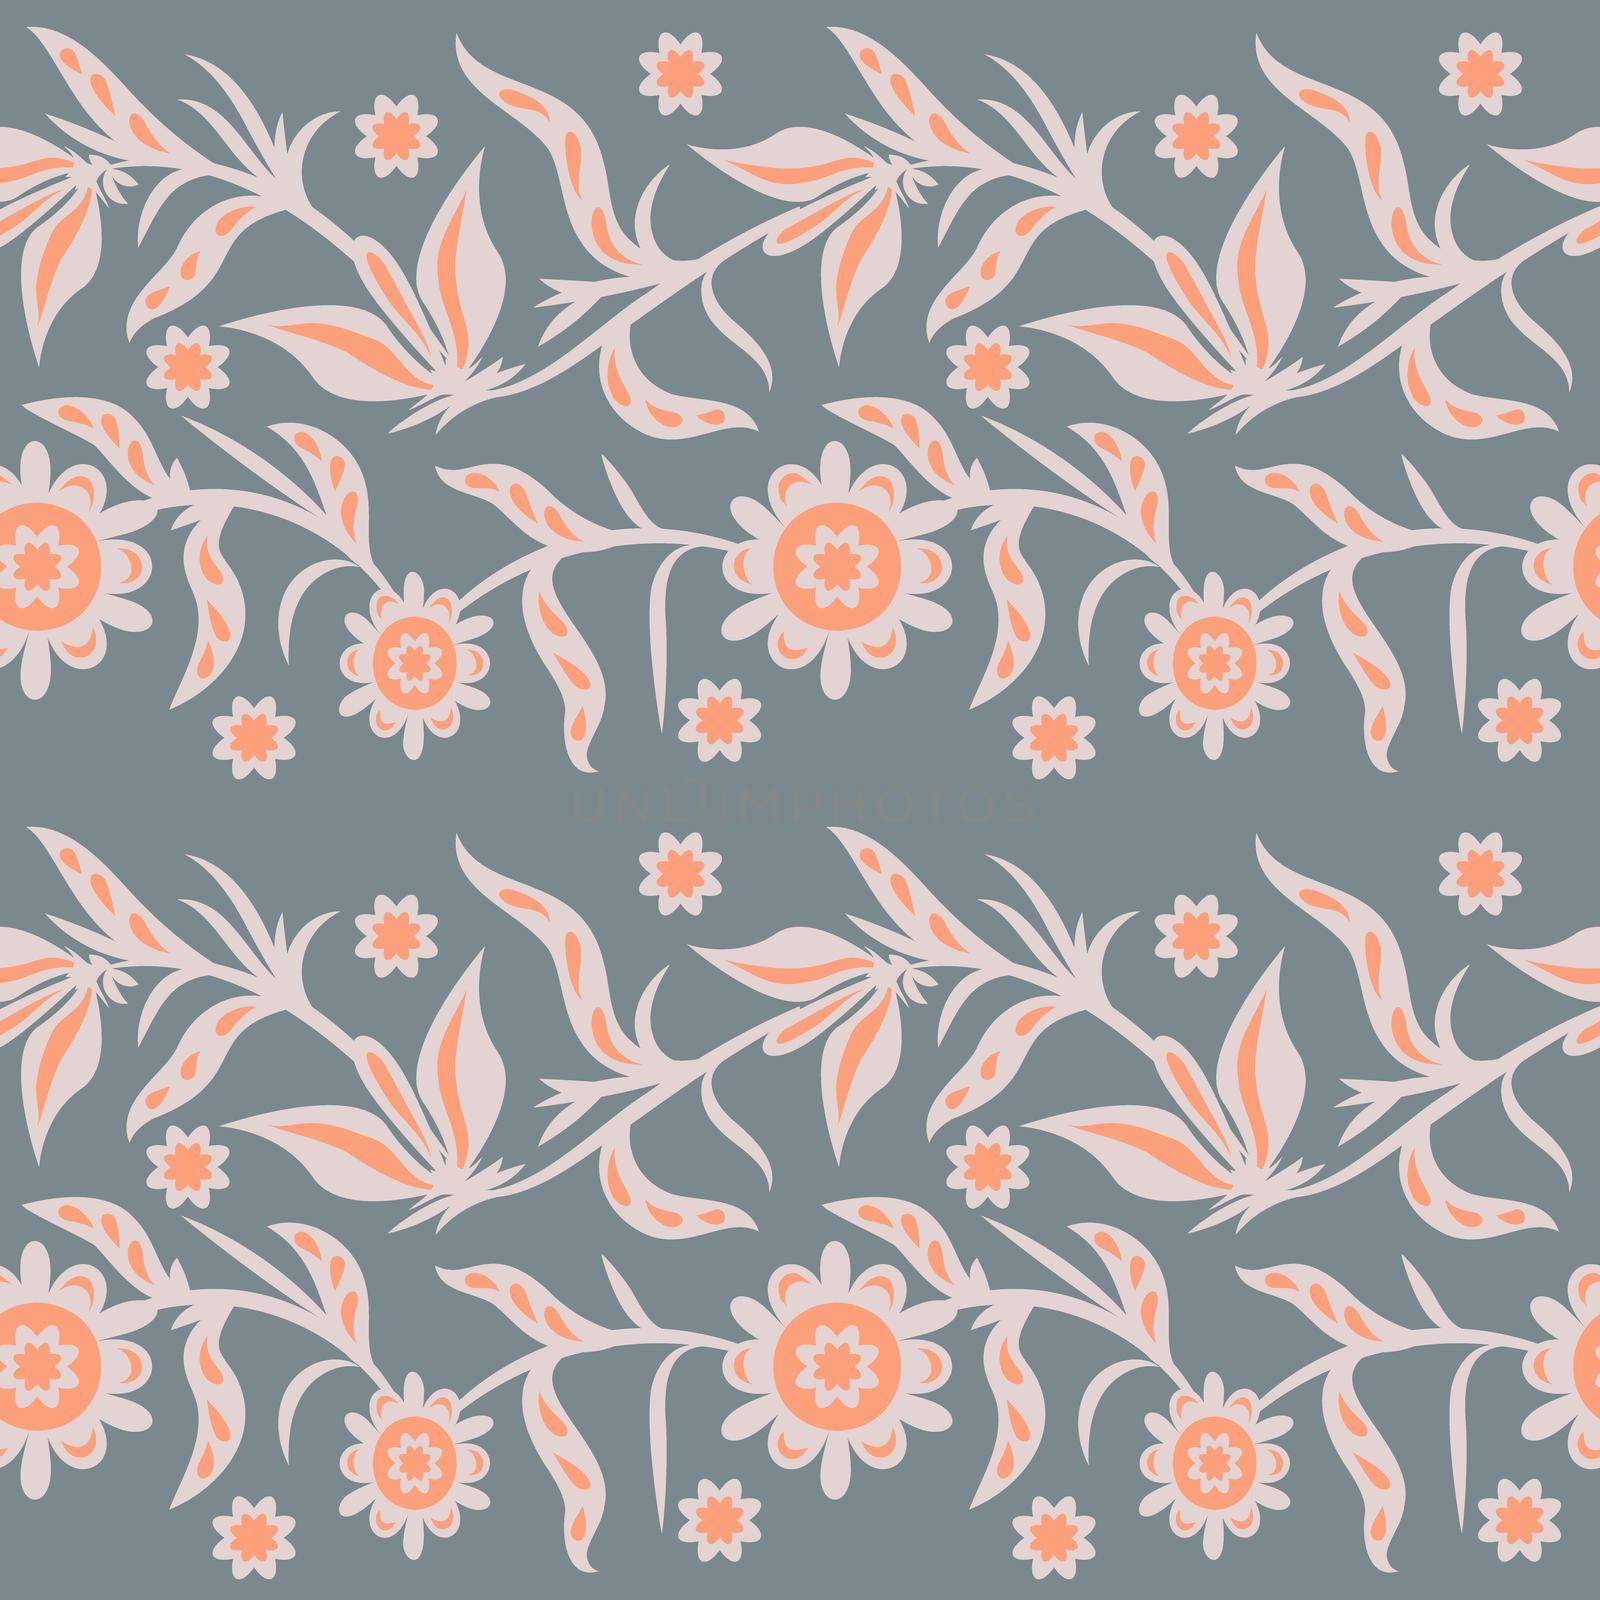 Folk ornamental floral seamleaa pattern by eskimos